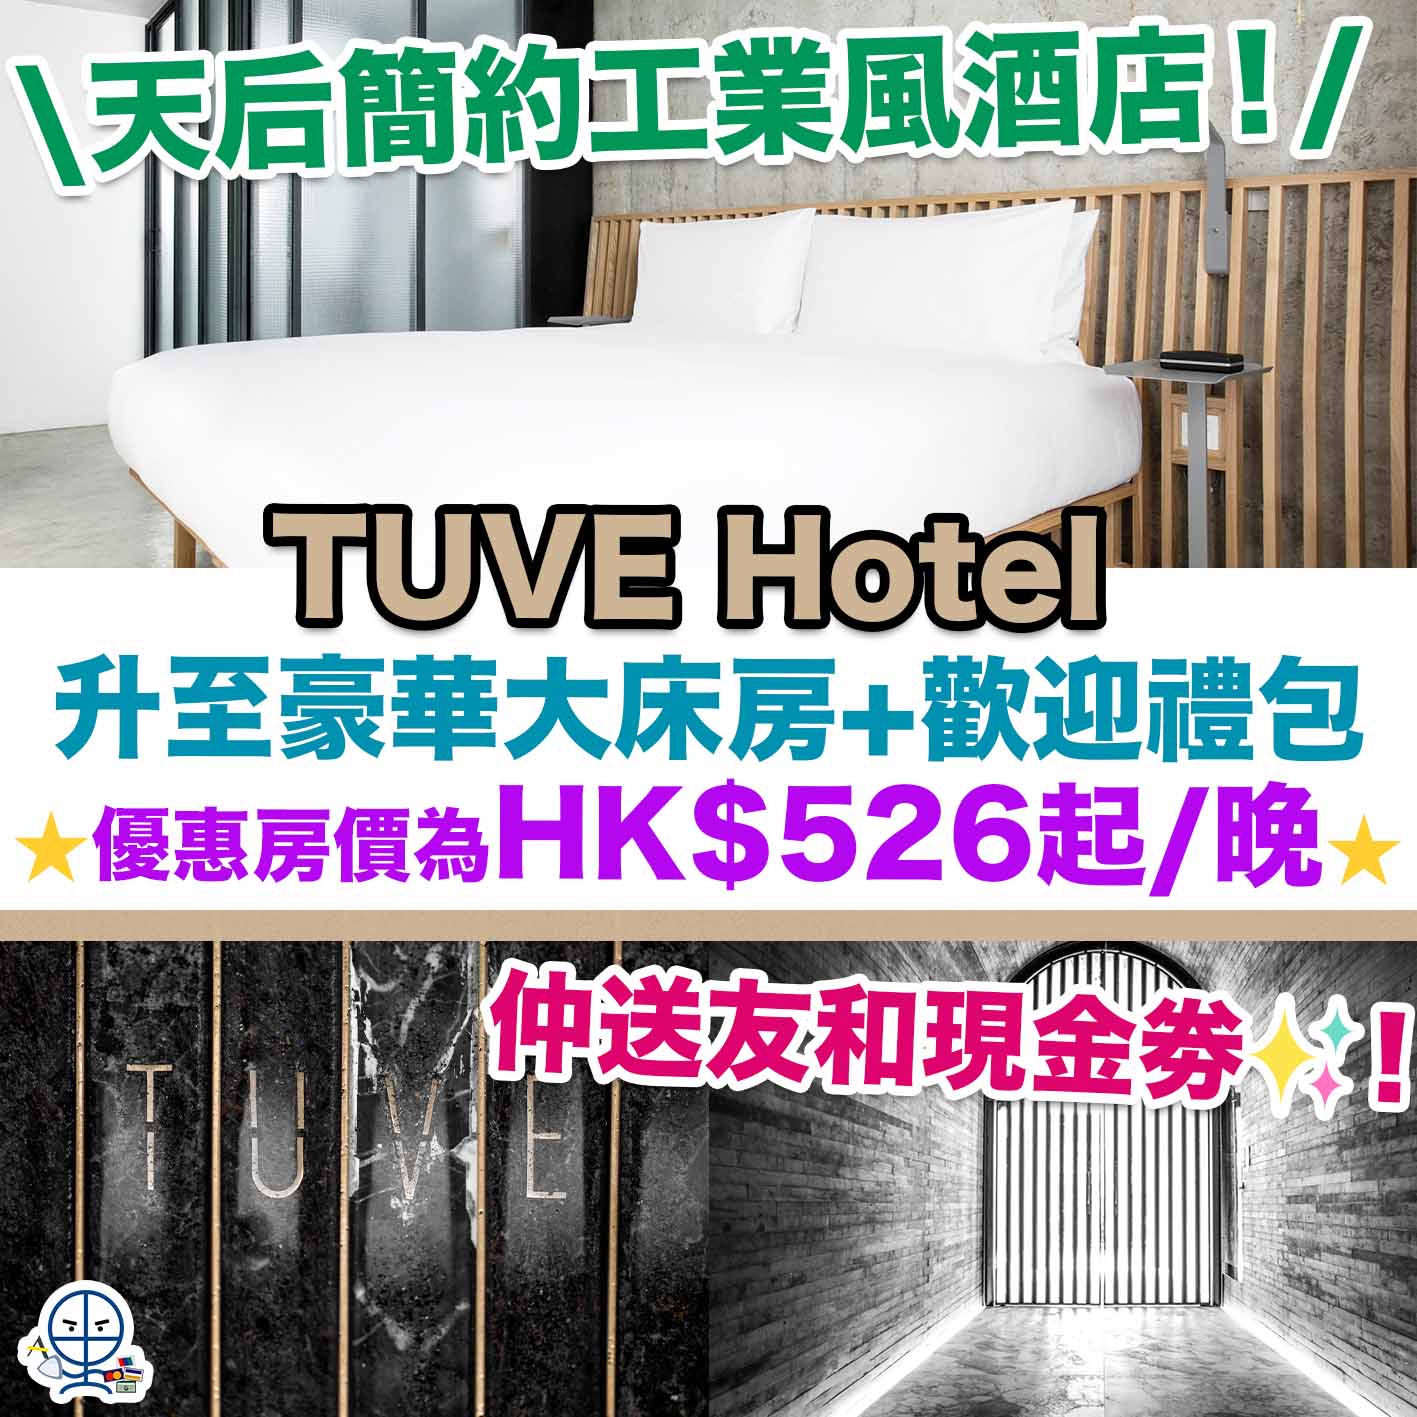 TUVE Hotel Staycation優惠-staycation-hotel staycation-天后工業風酒店-酒店禮物-餐飲消費額